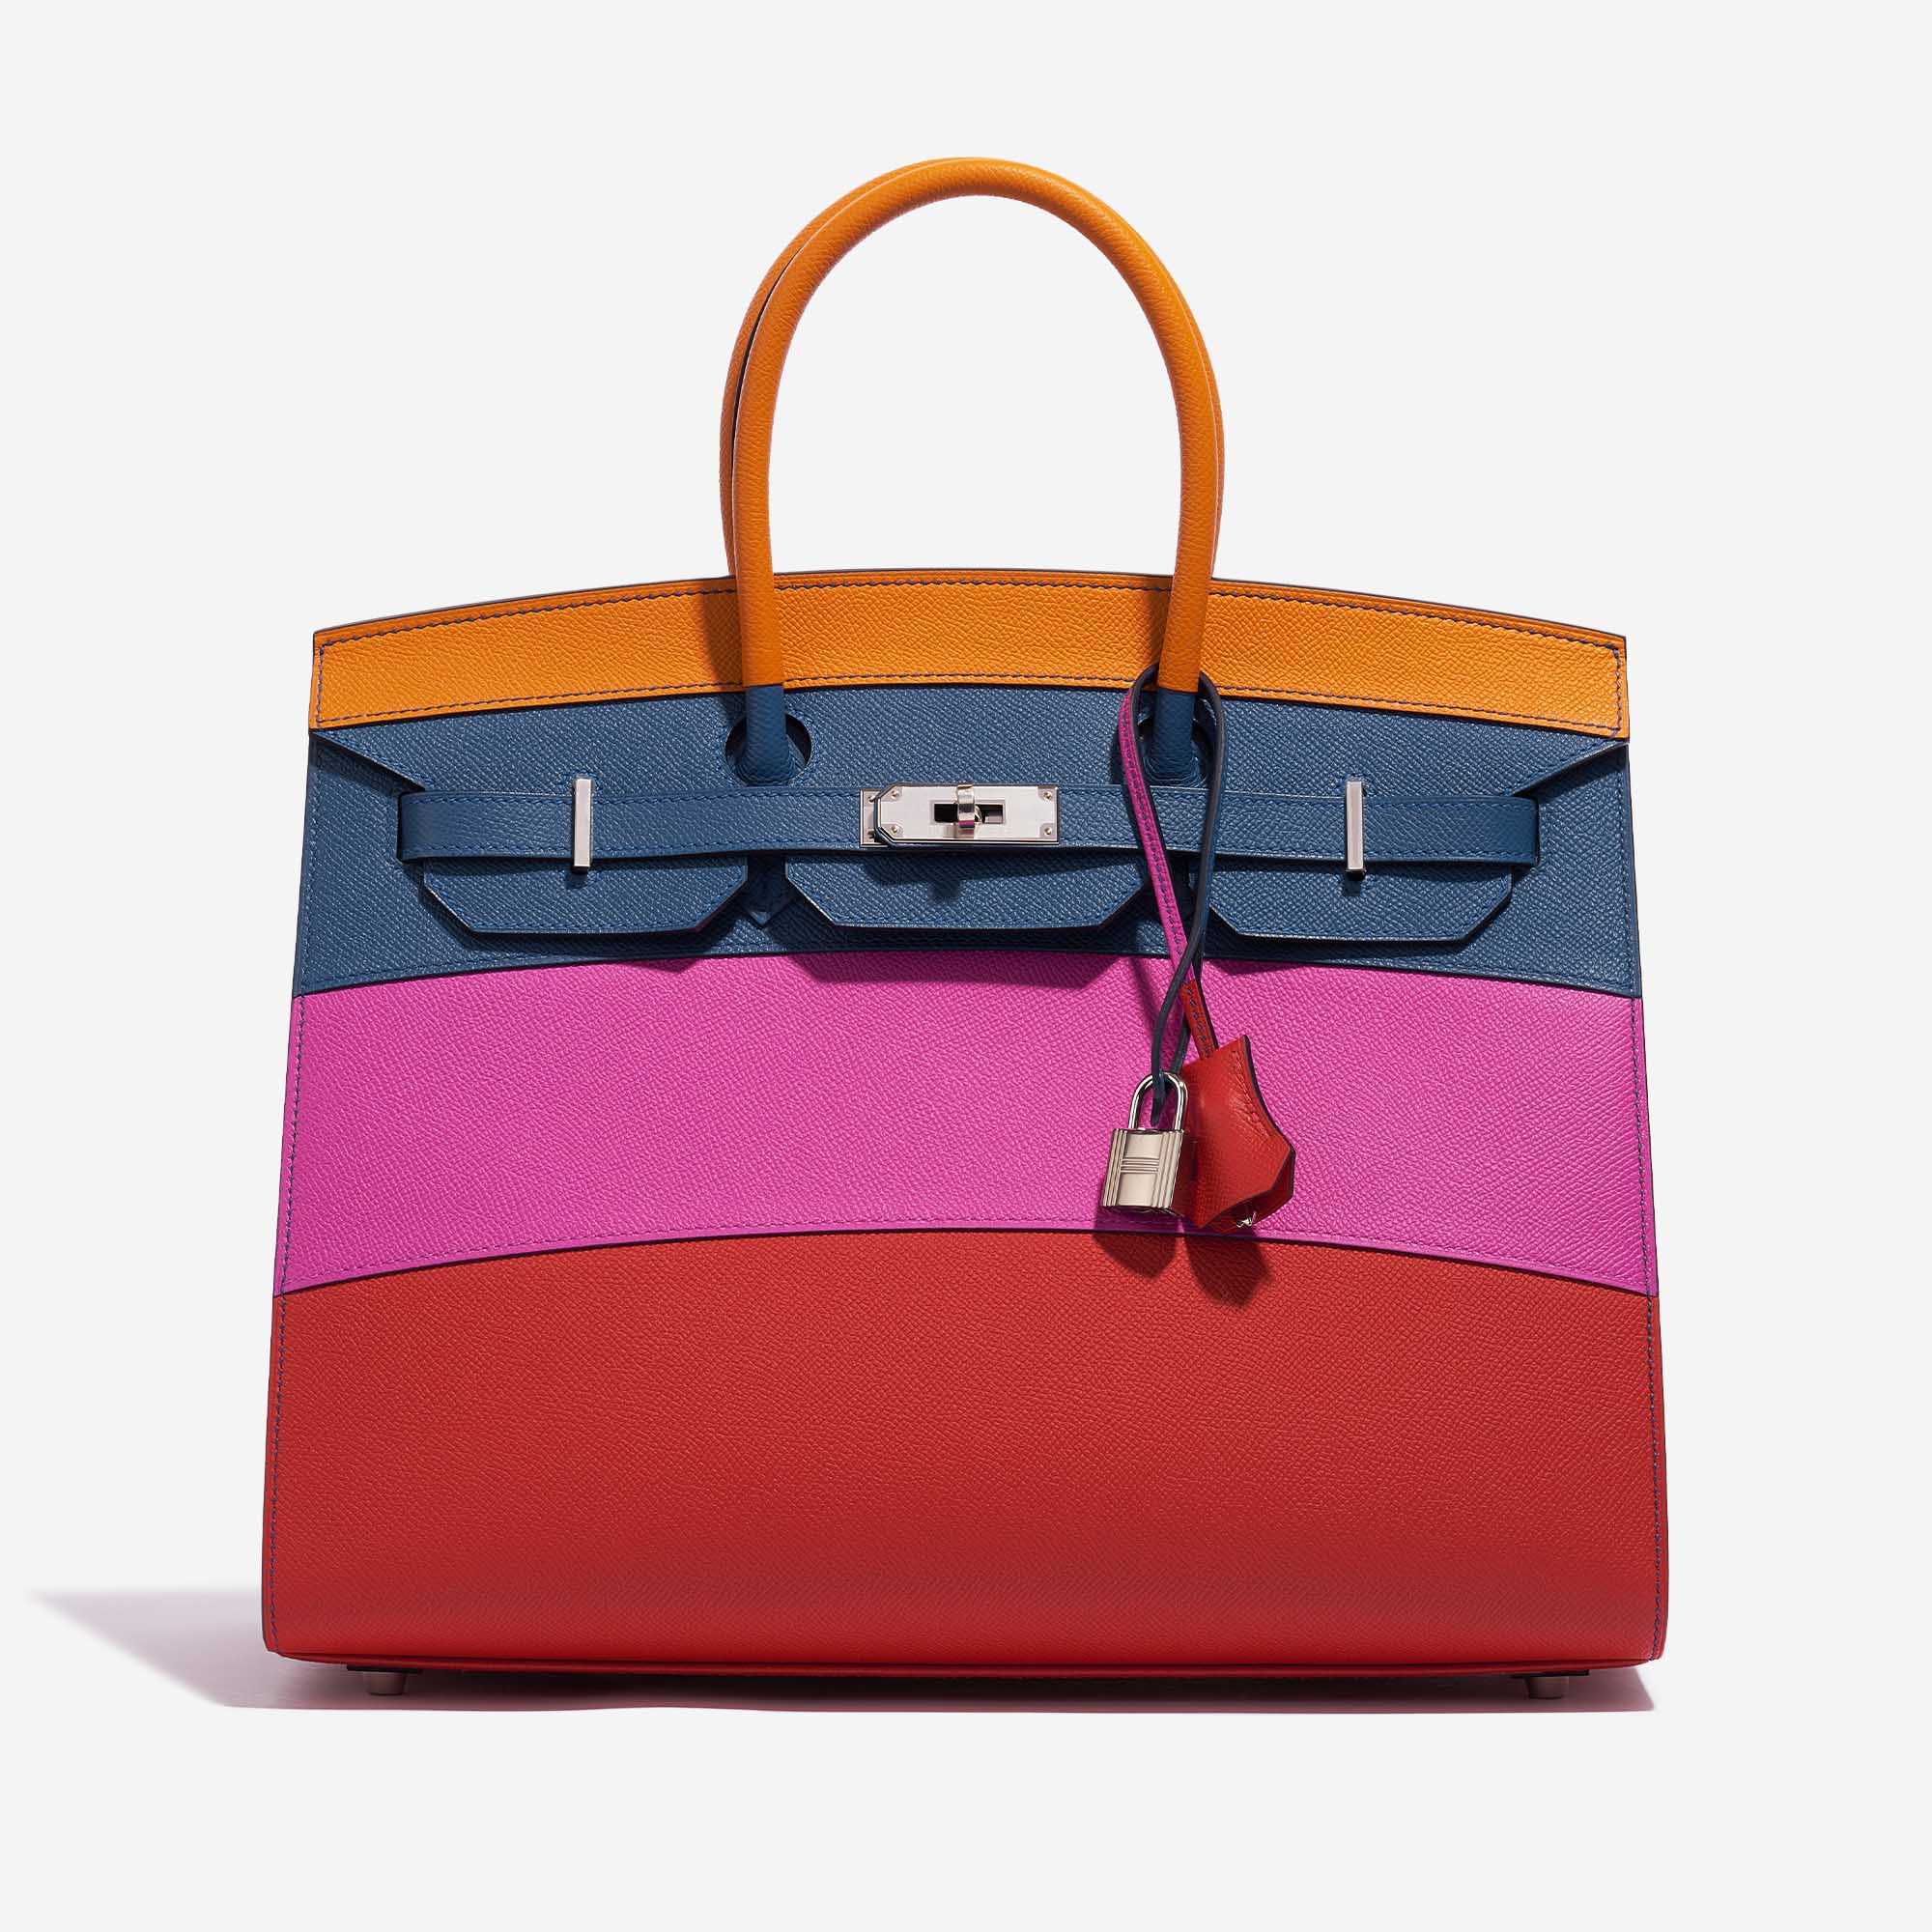 Gebrauchte Hermès Tasche Birkin 35 Sunset Rainbow Epsom Apricot / Blue Achat / Magnolia / Rouge Casaque Multicolour Front | Verkaufen Sie Ihre Designer-Tasche auf Saclab.com